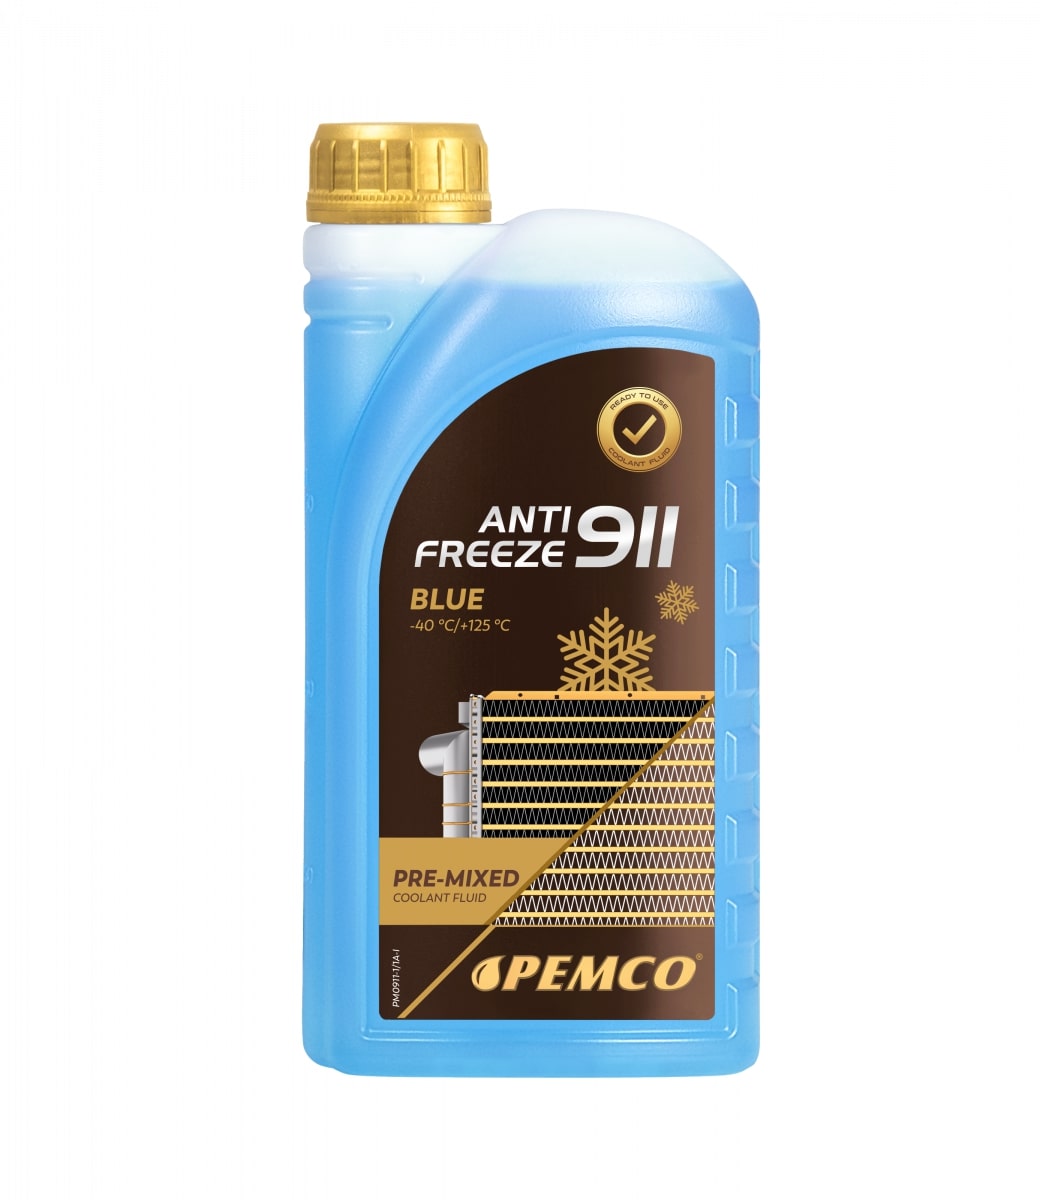  PEMCO Antifreeze 911 (-40 °C)